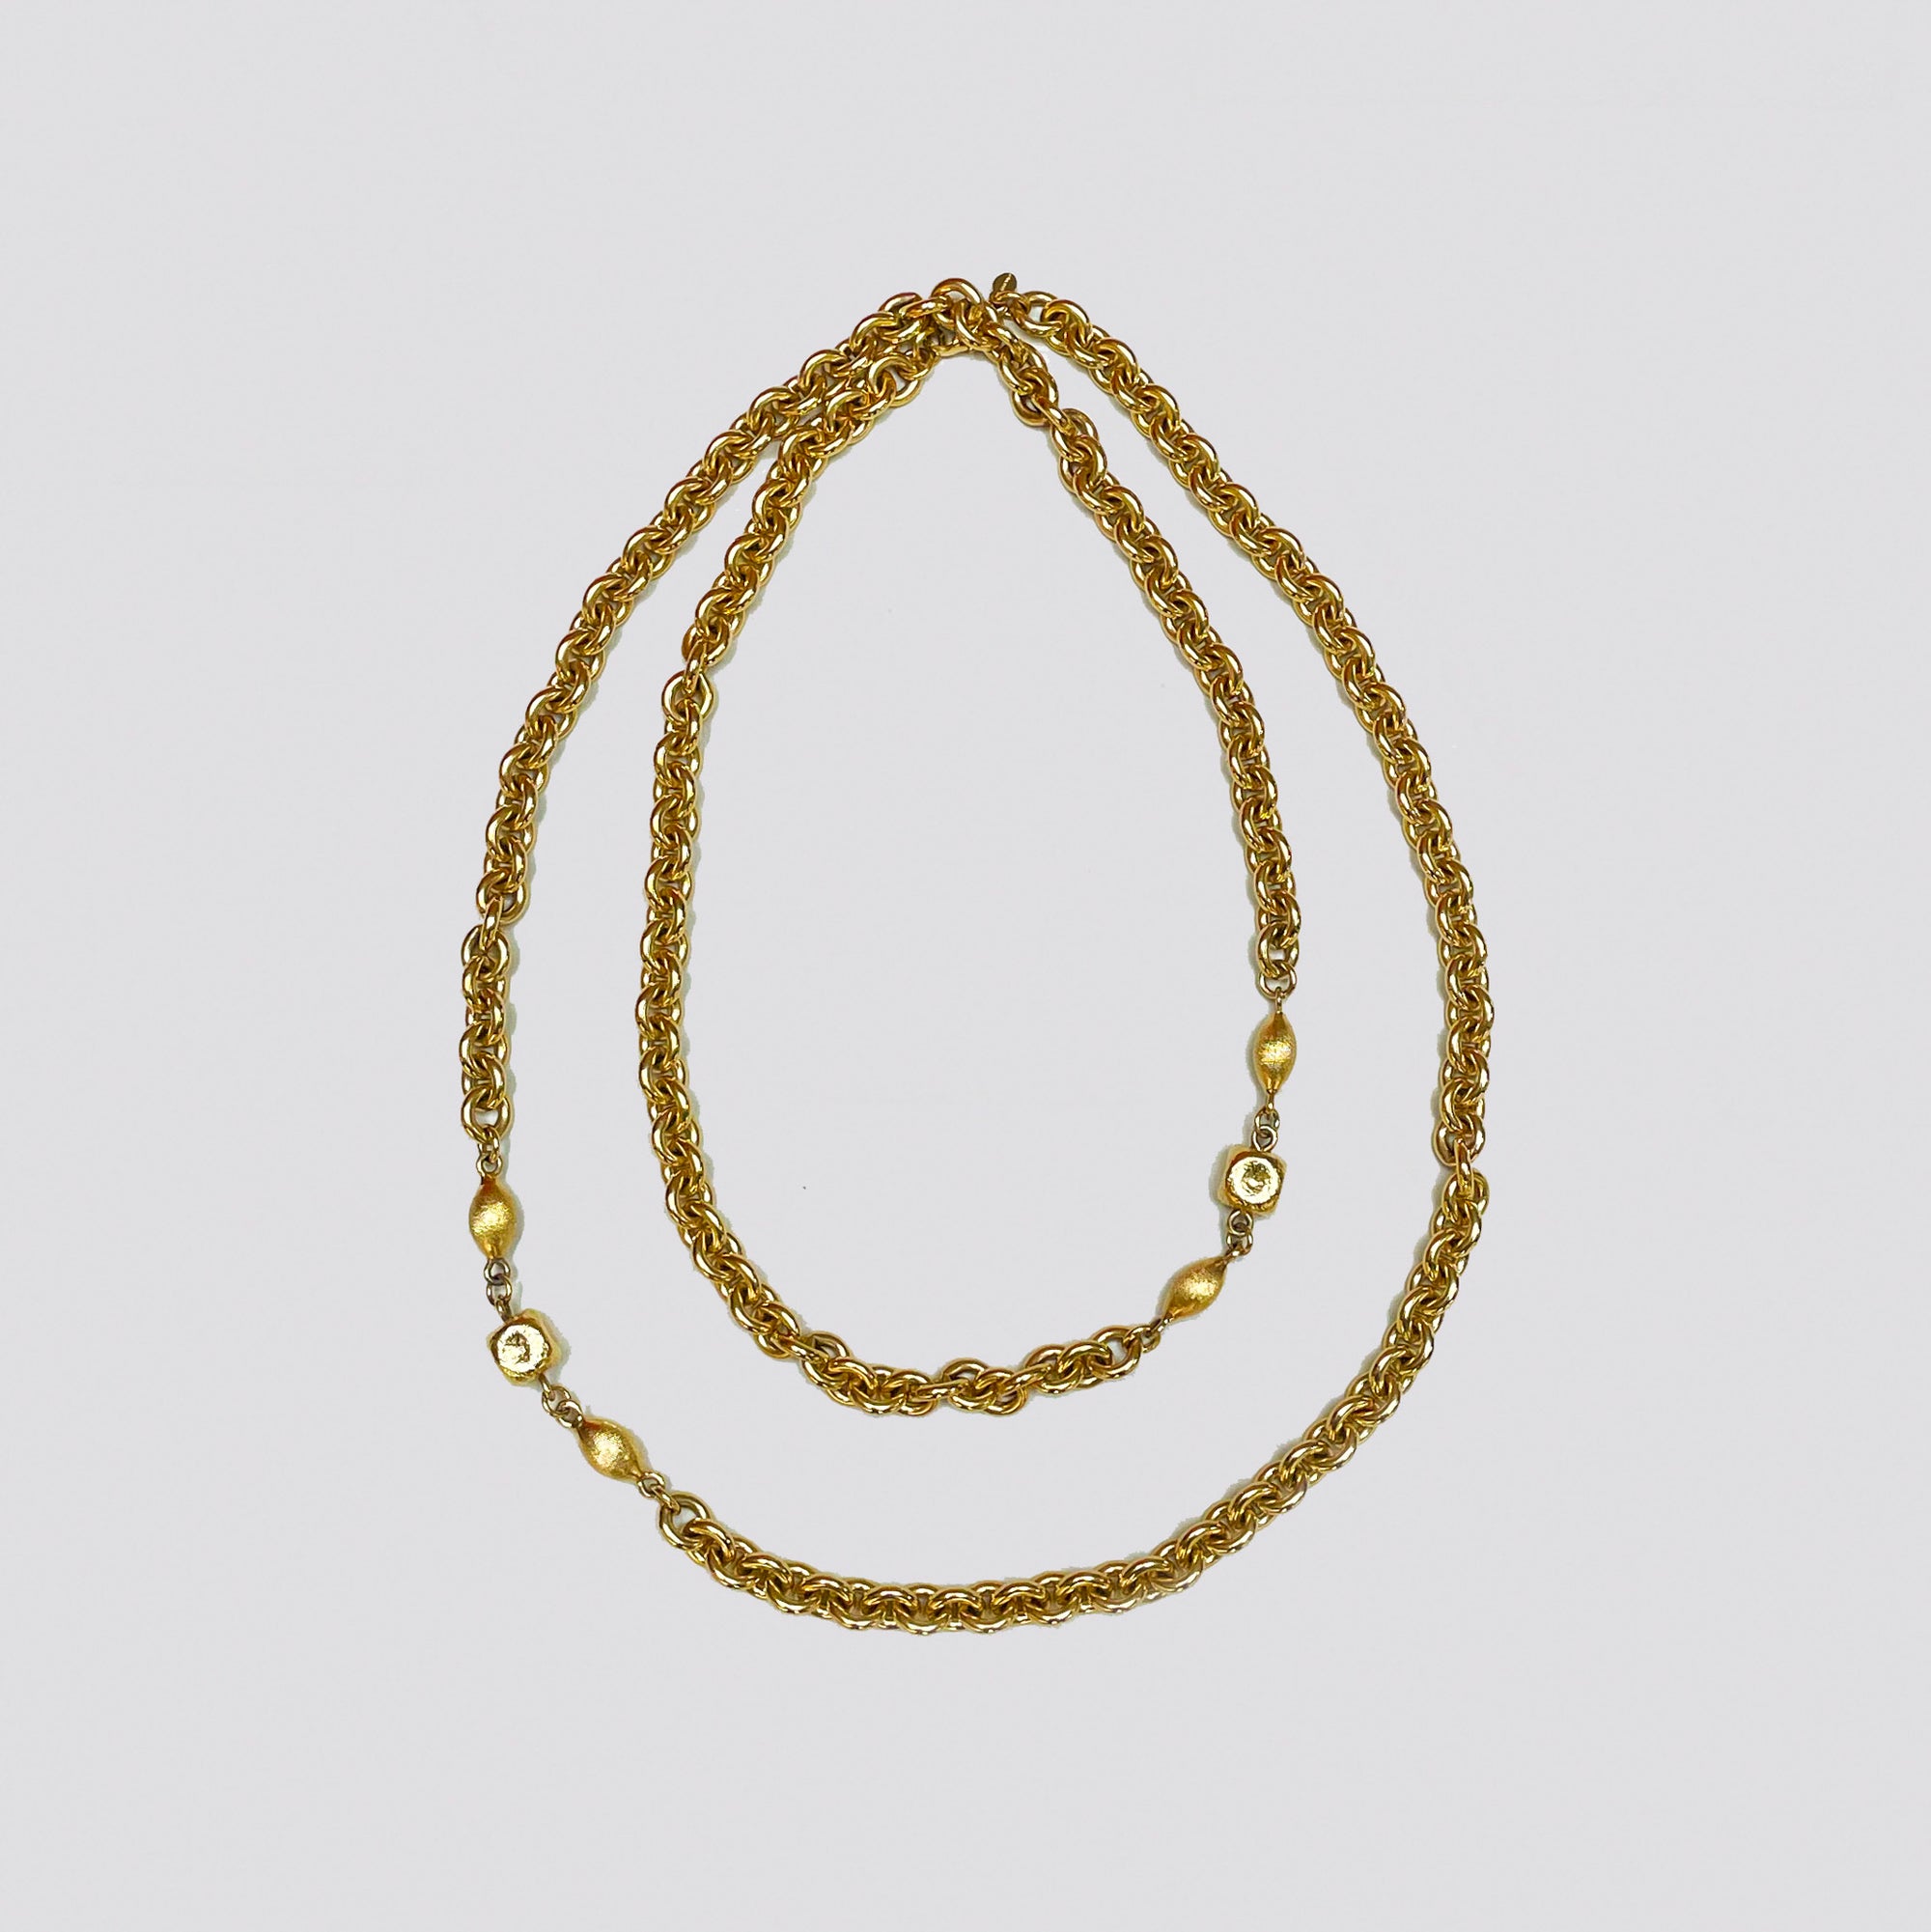 Vintage Monet Gold-tone Chain Necklace